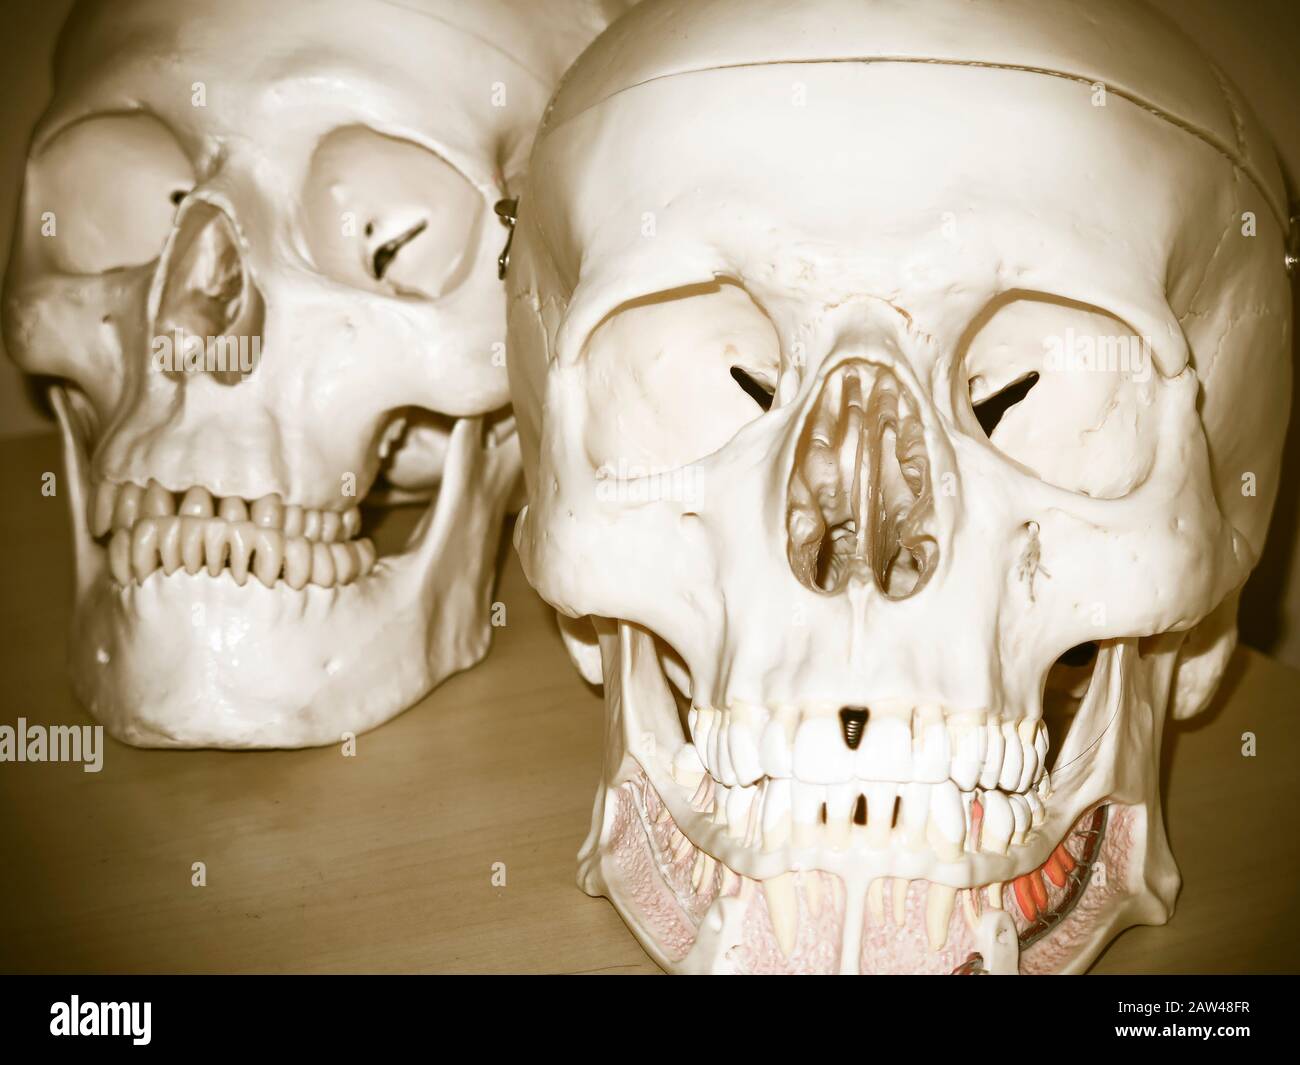 Modèles de crânes de formation pour étudiants en médecine Banque D'Images